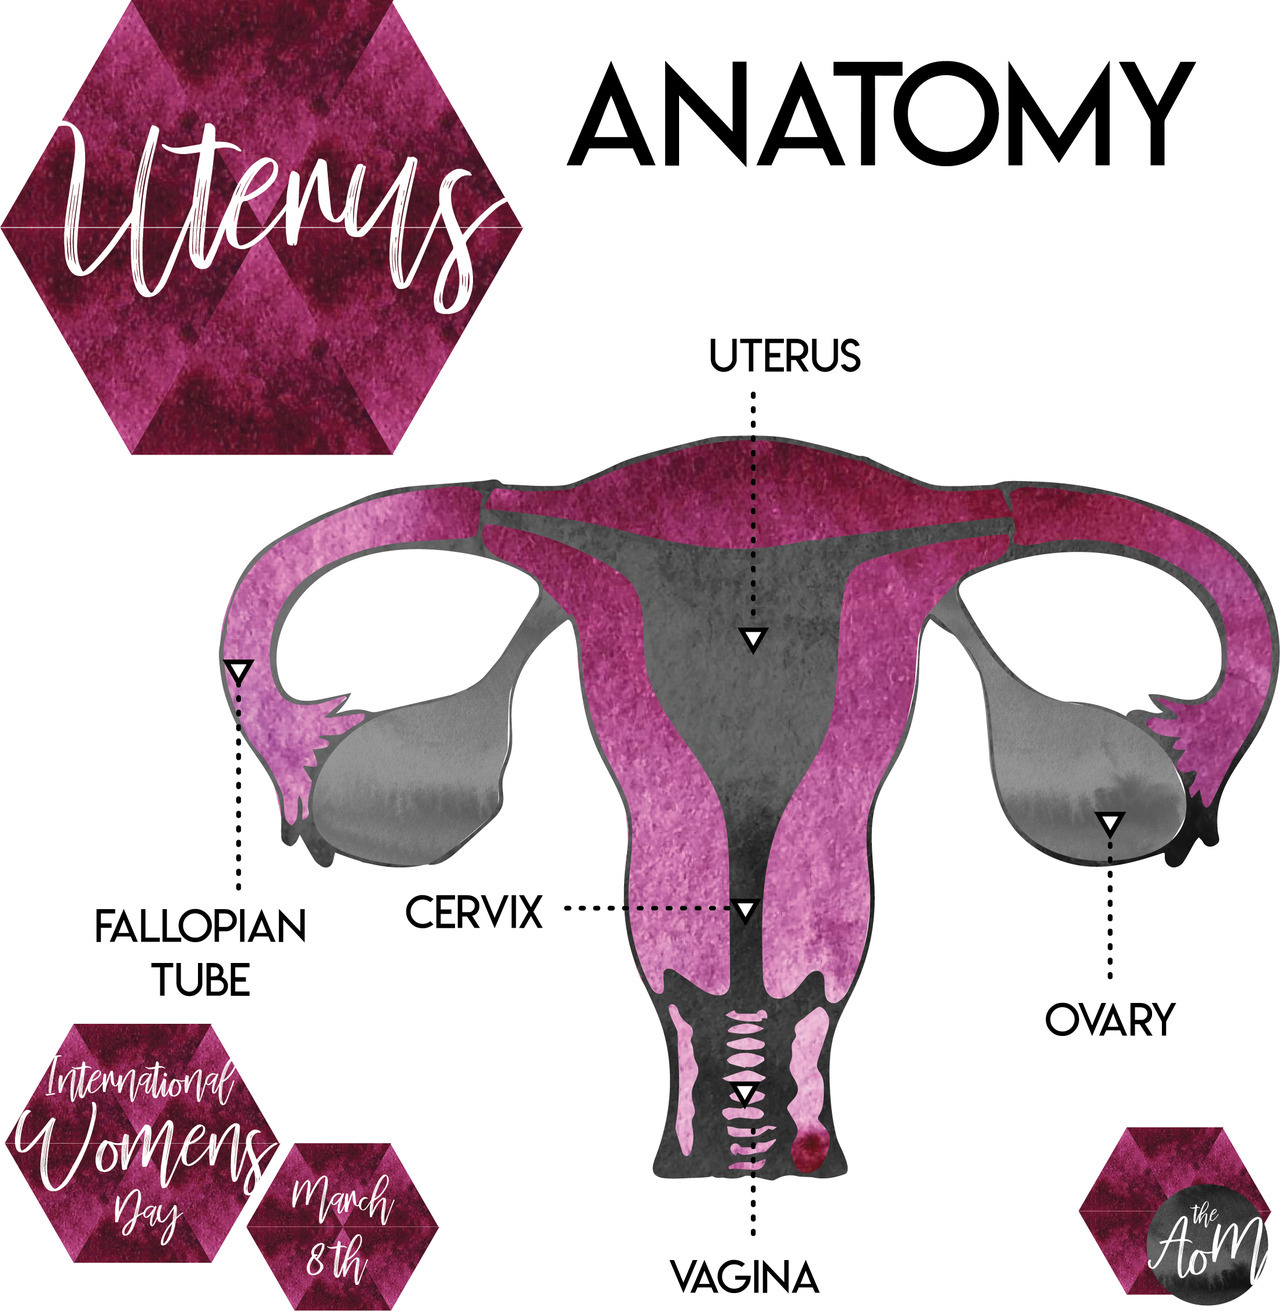 The-Art-Of-Medicine — Uterus Anatomy Happy International Women’s Day!